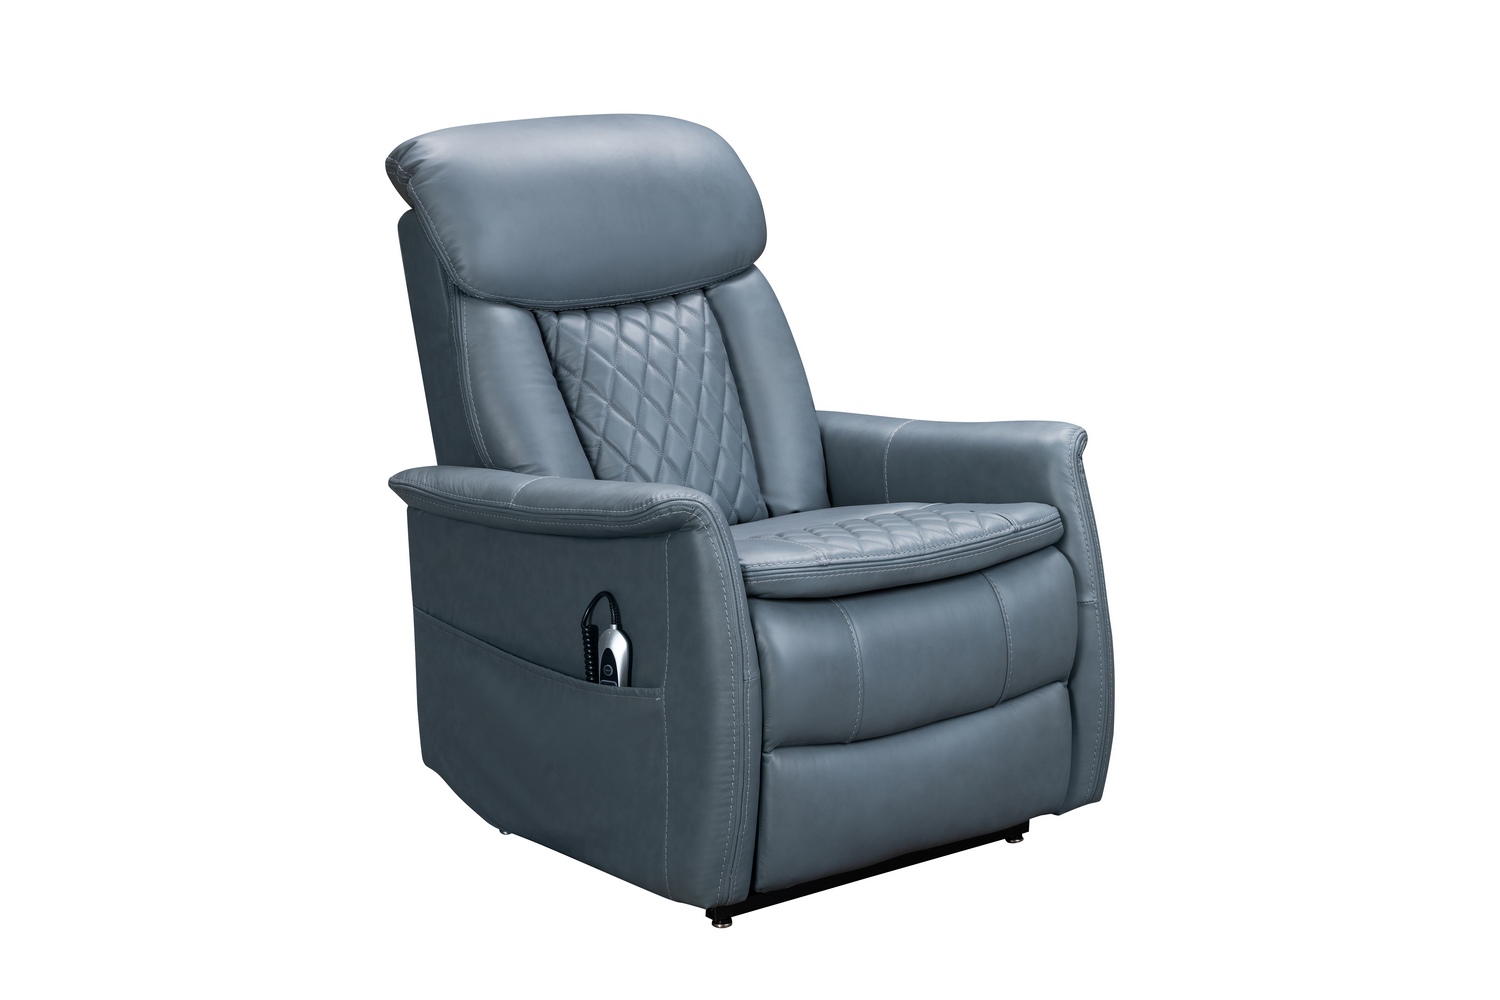 Barcalounger Lauren Lift Chair Recliner Chair with Power Head Rest, Power Lumbar and Lay Flat Mechanism - Masen Bluegray/Leather Match